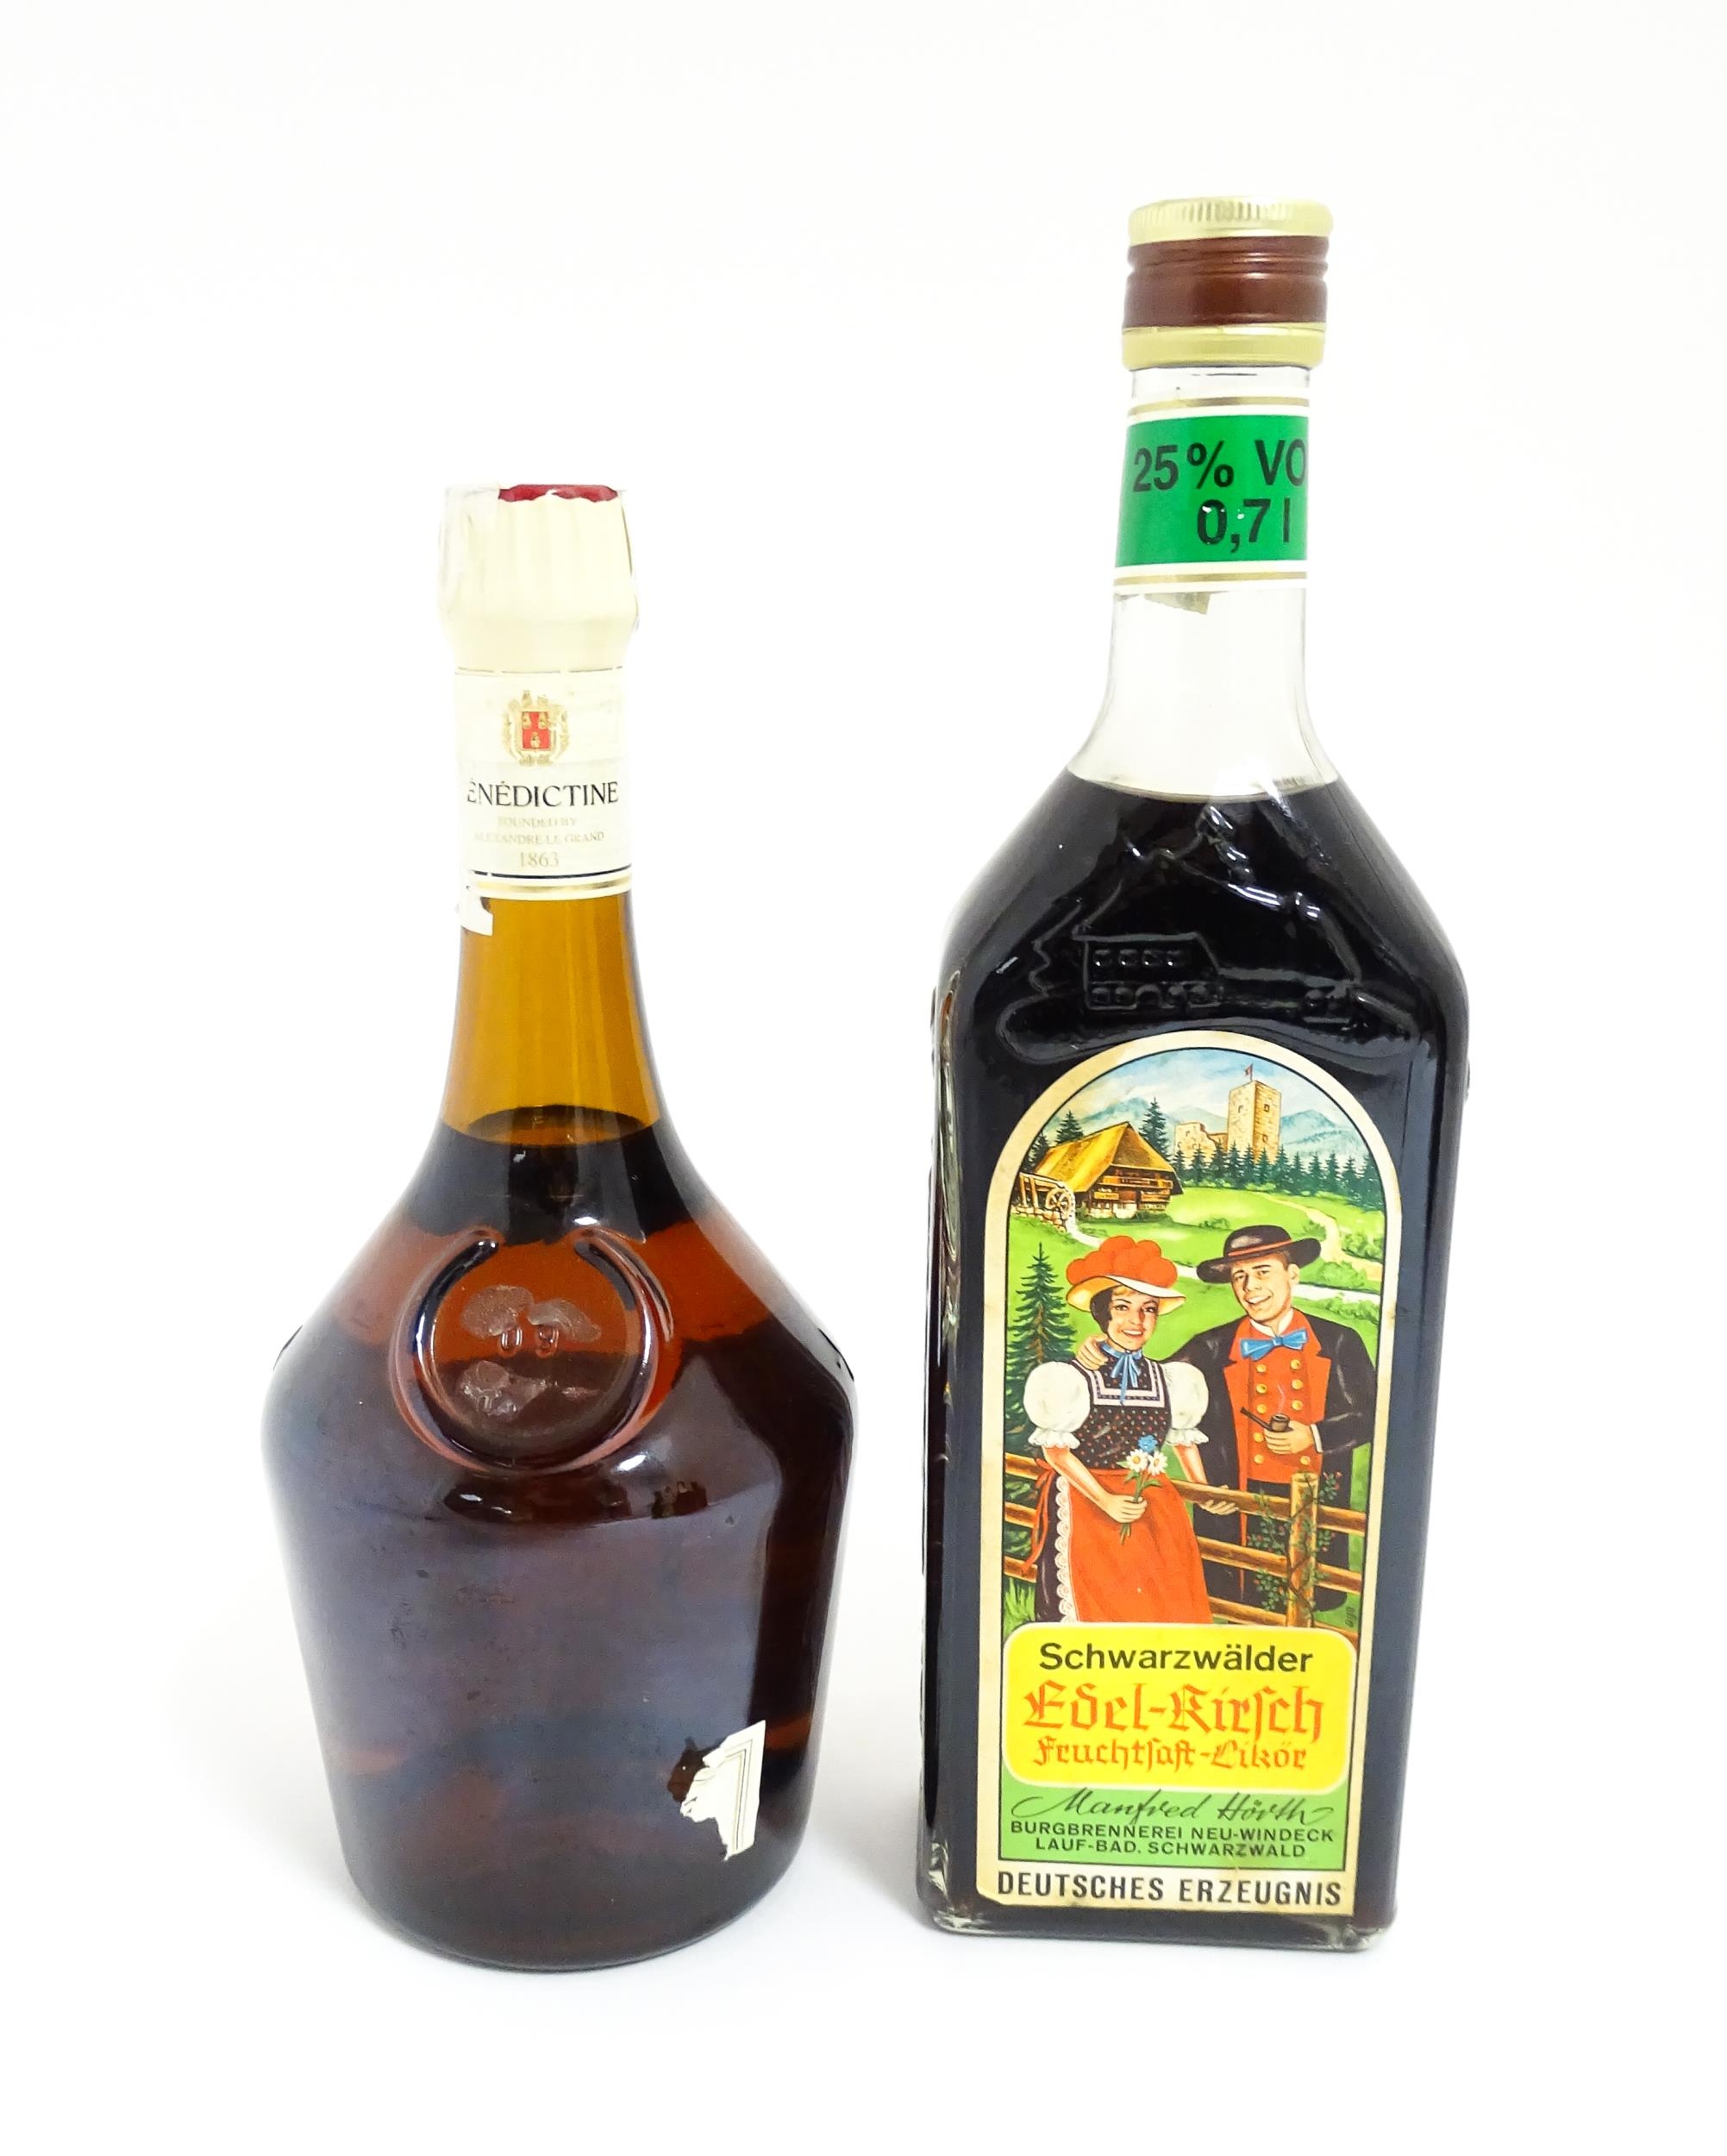 A 70cl bottle of Benedictine liqueur, together with a 70cl bottle of Schwarzwälder Edel-Kirsch